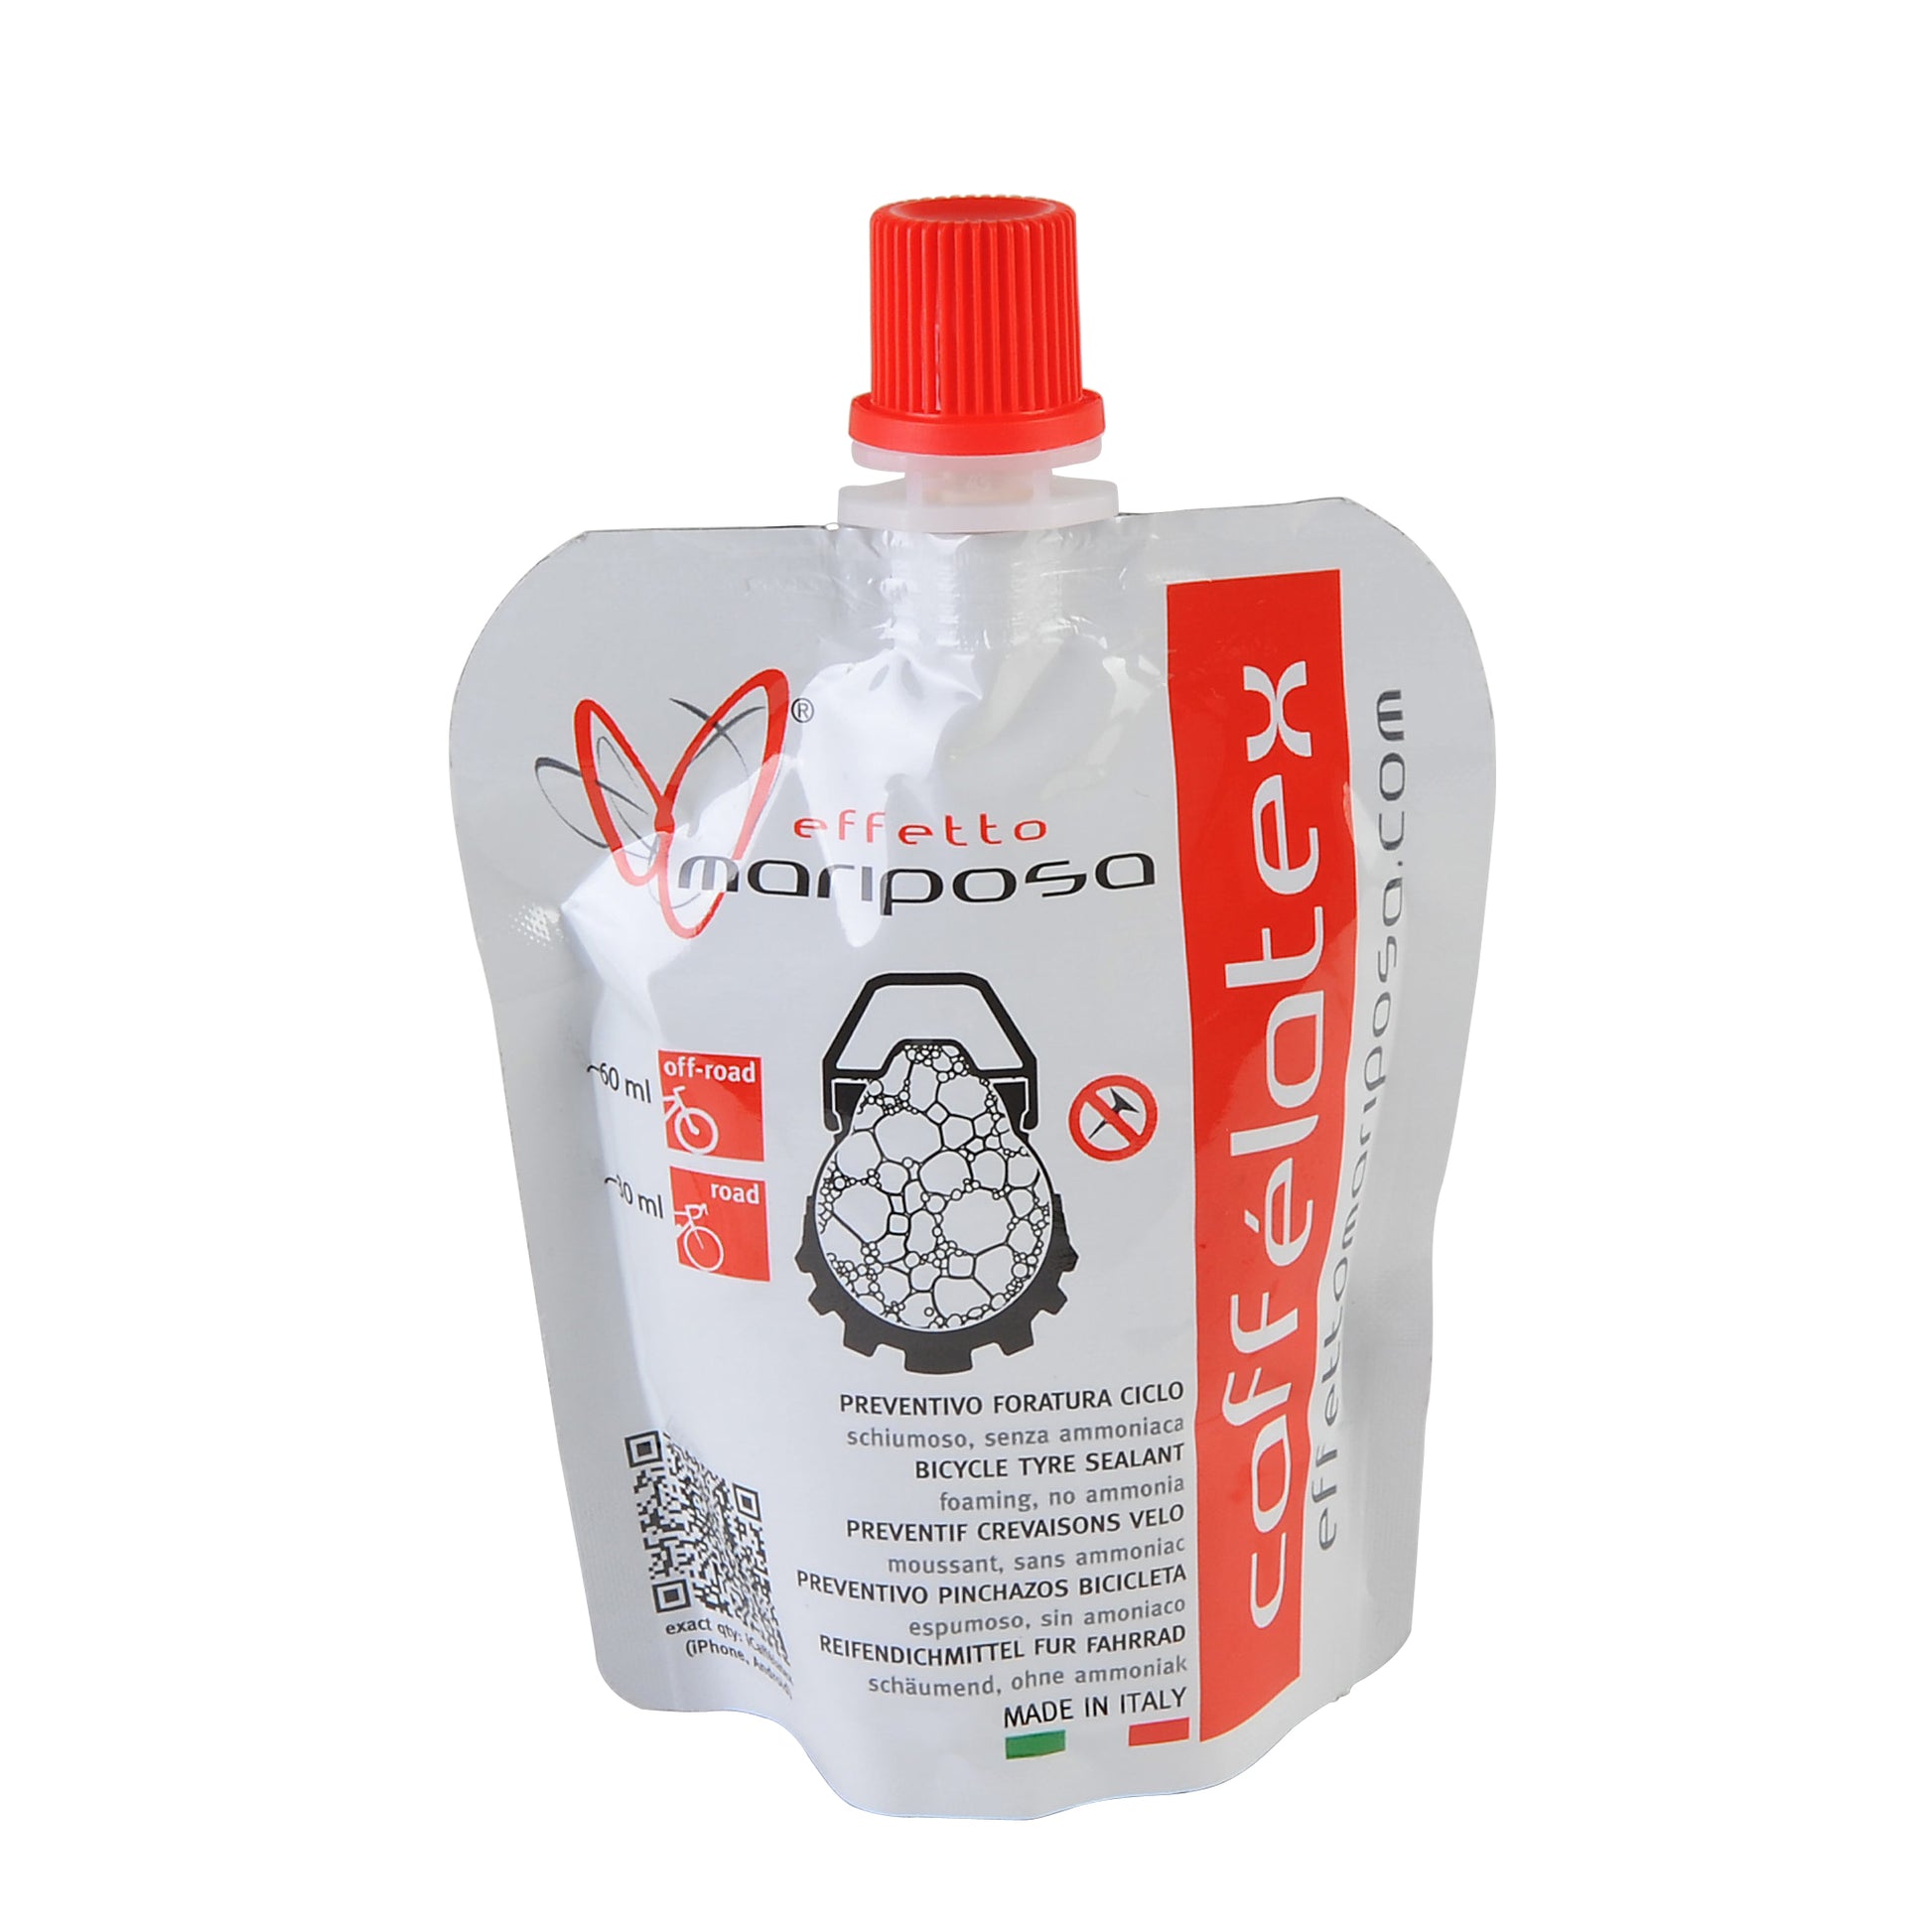 LATEX 1 Préventif anti-crevaison pour pneus tubeless (sans ammoniaque) 1000  ml